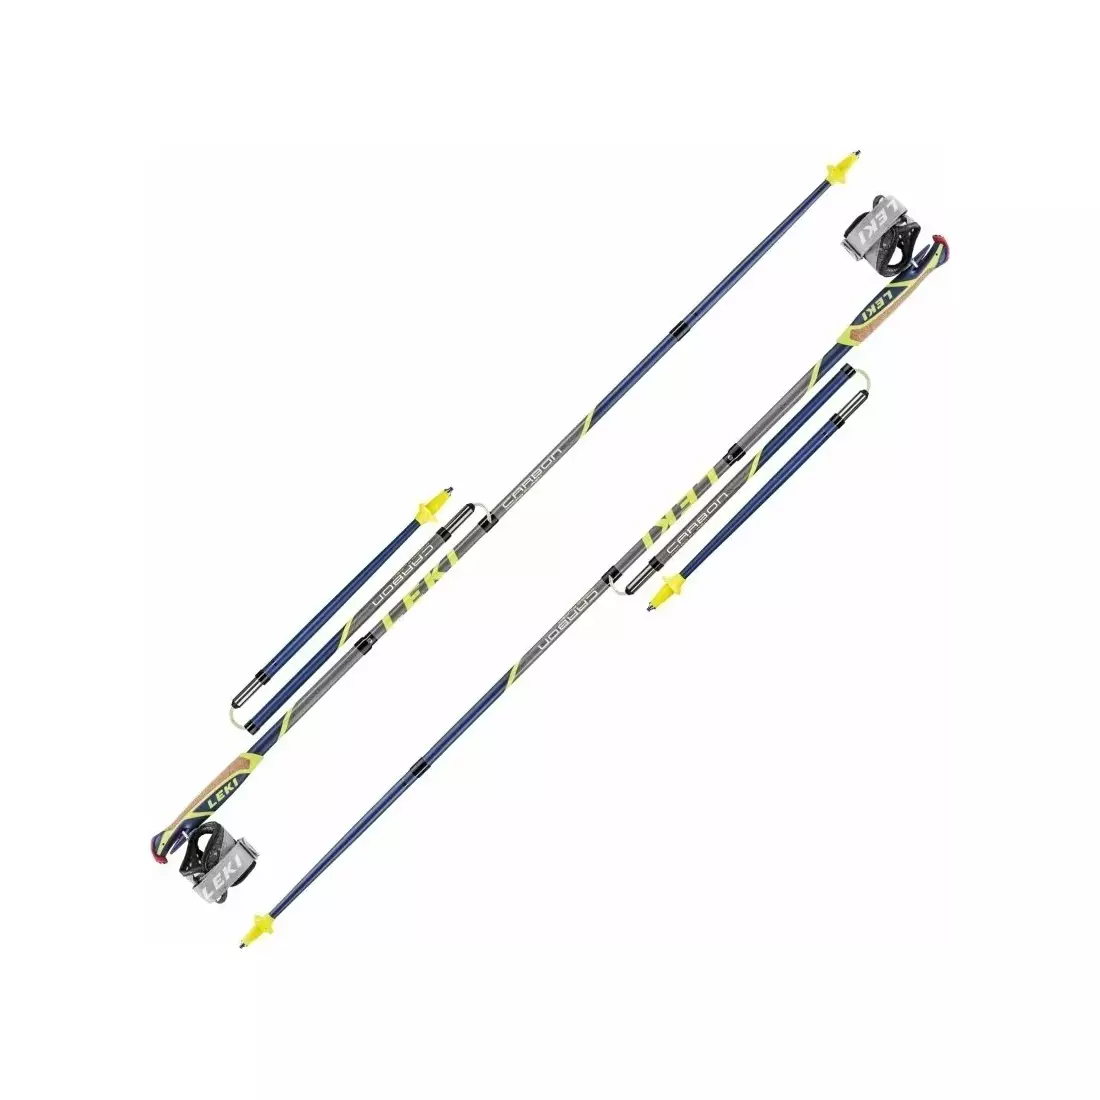 LEKI Micro Flash Carbon Nordic walking/trekking sticks, blue-yellow